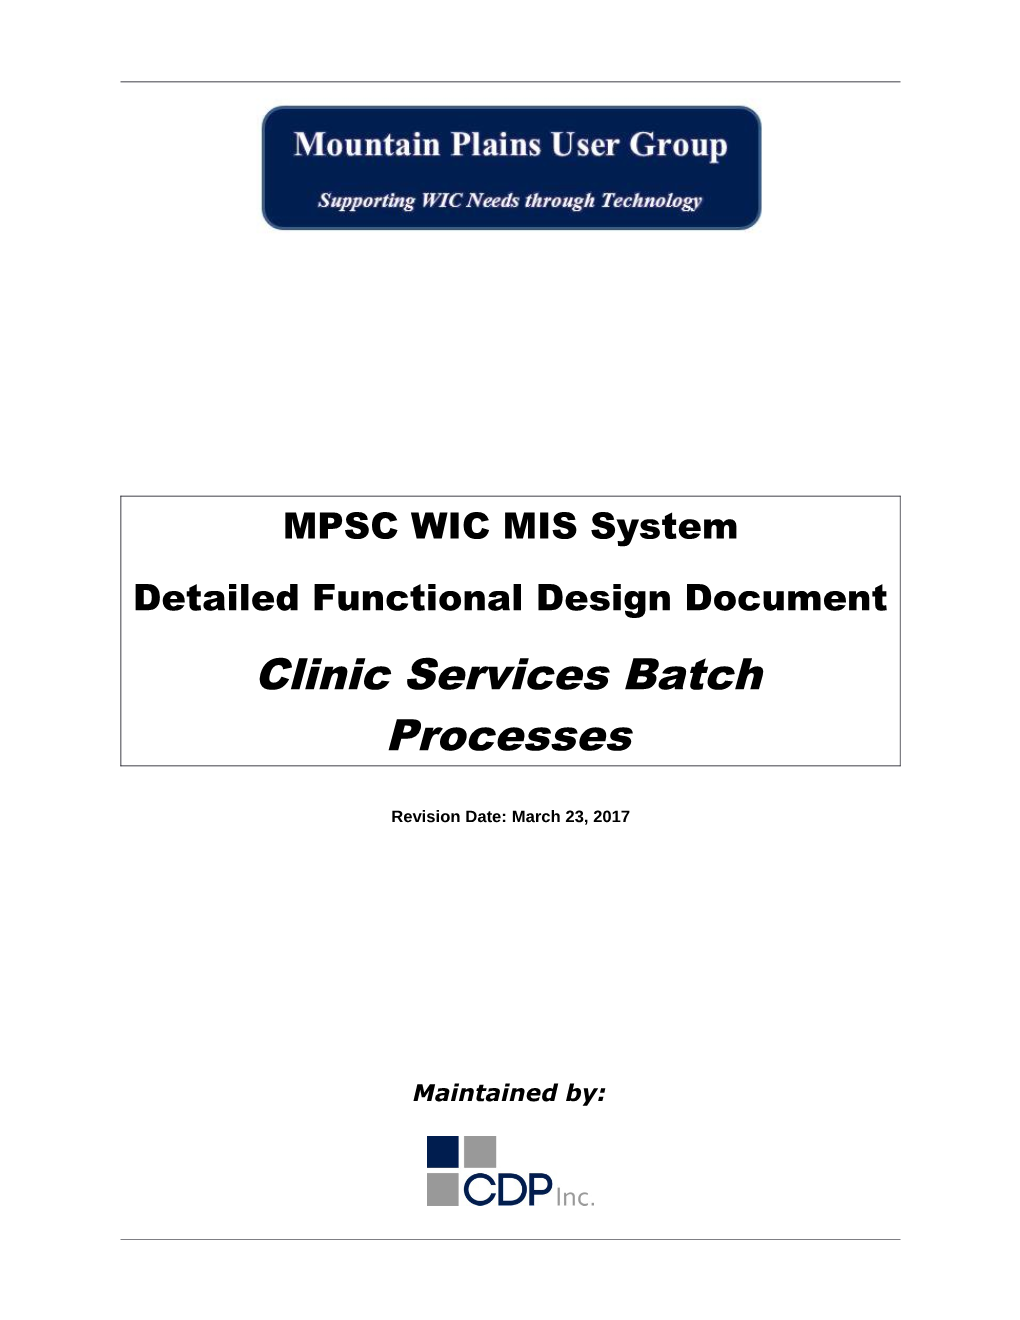 Clinic Services Batch Processes